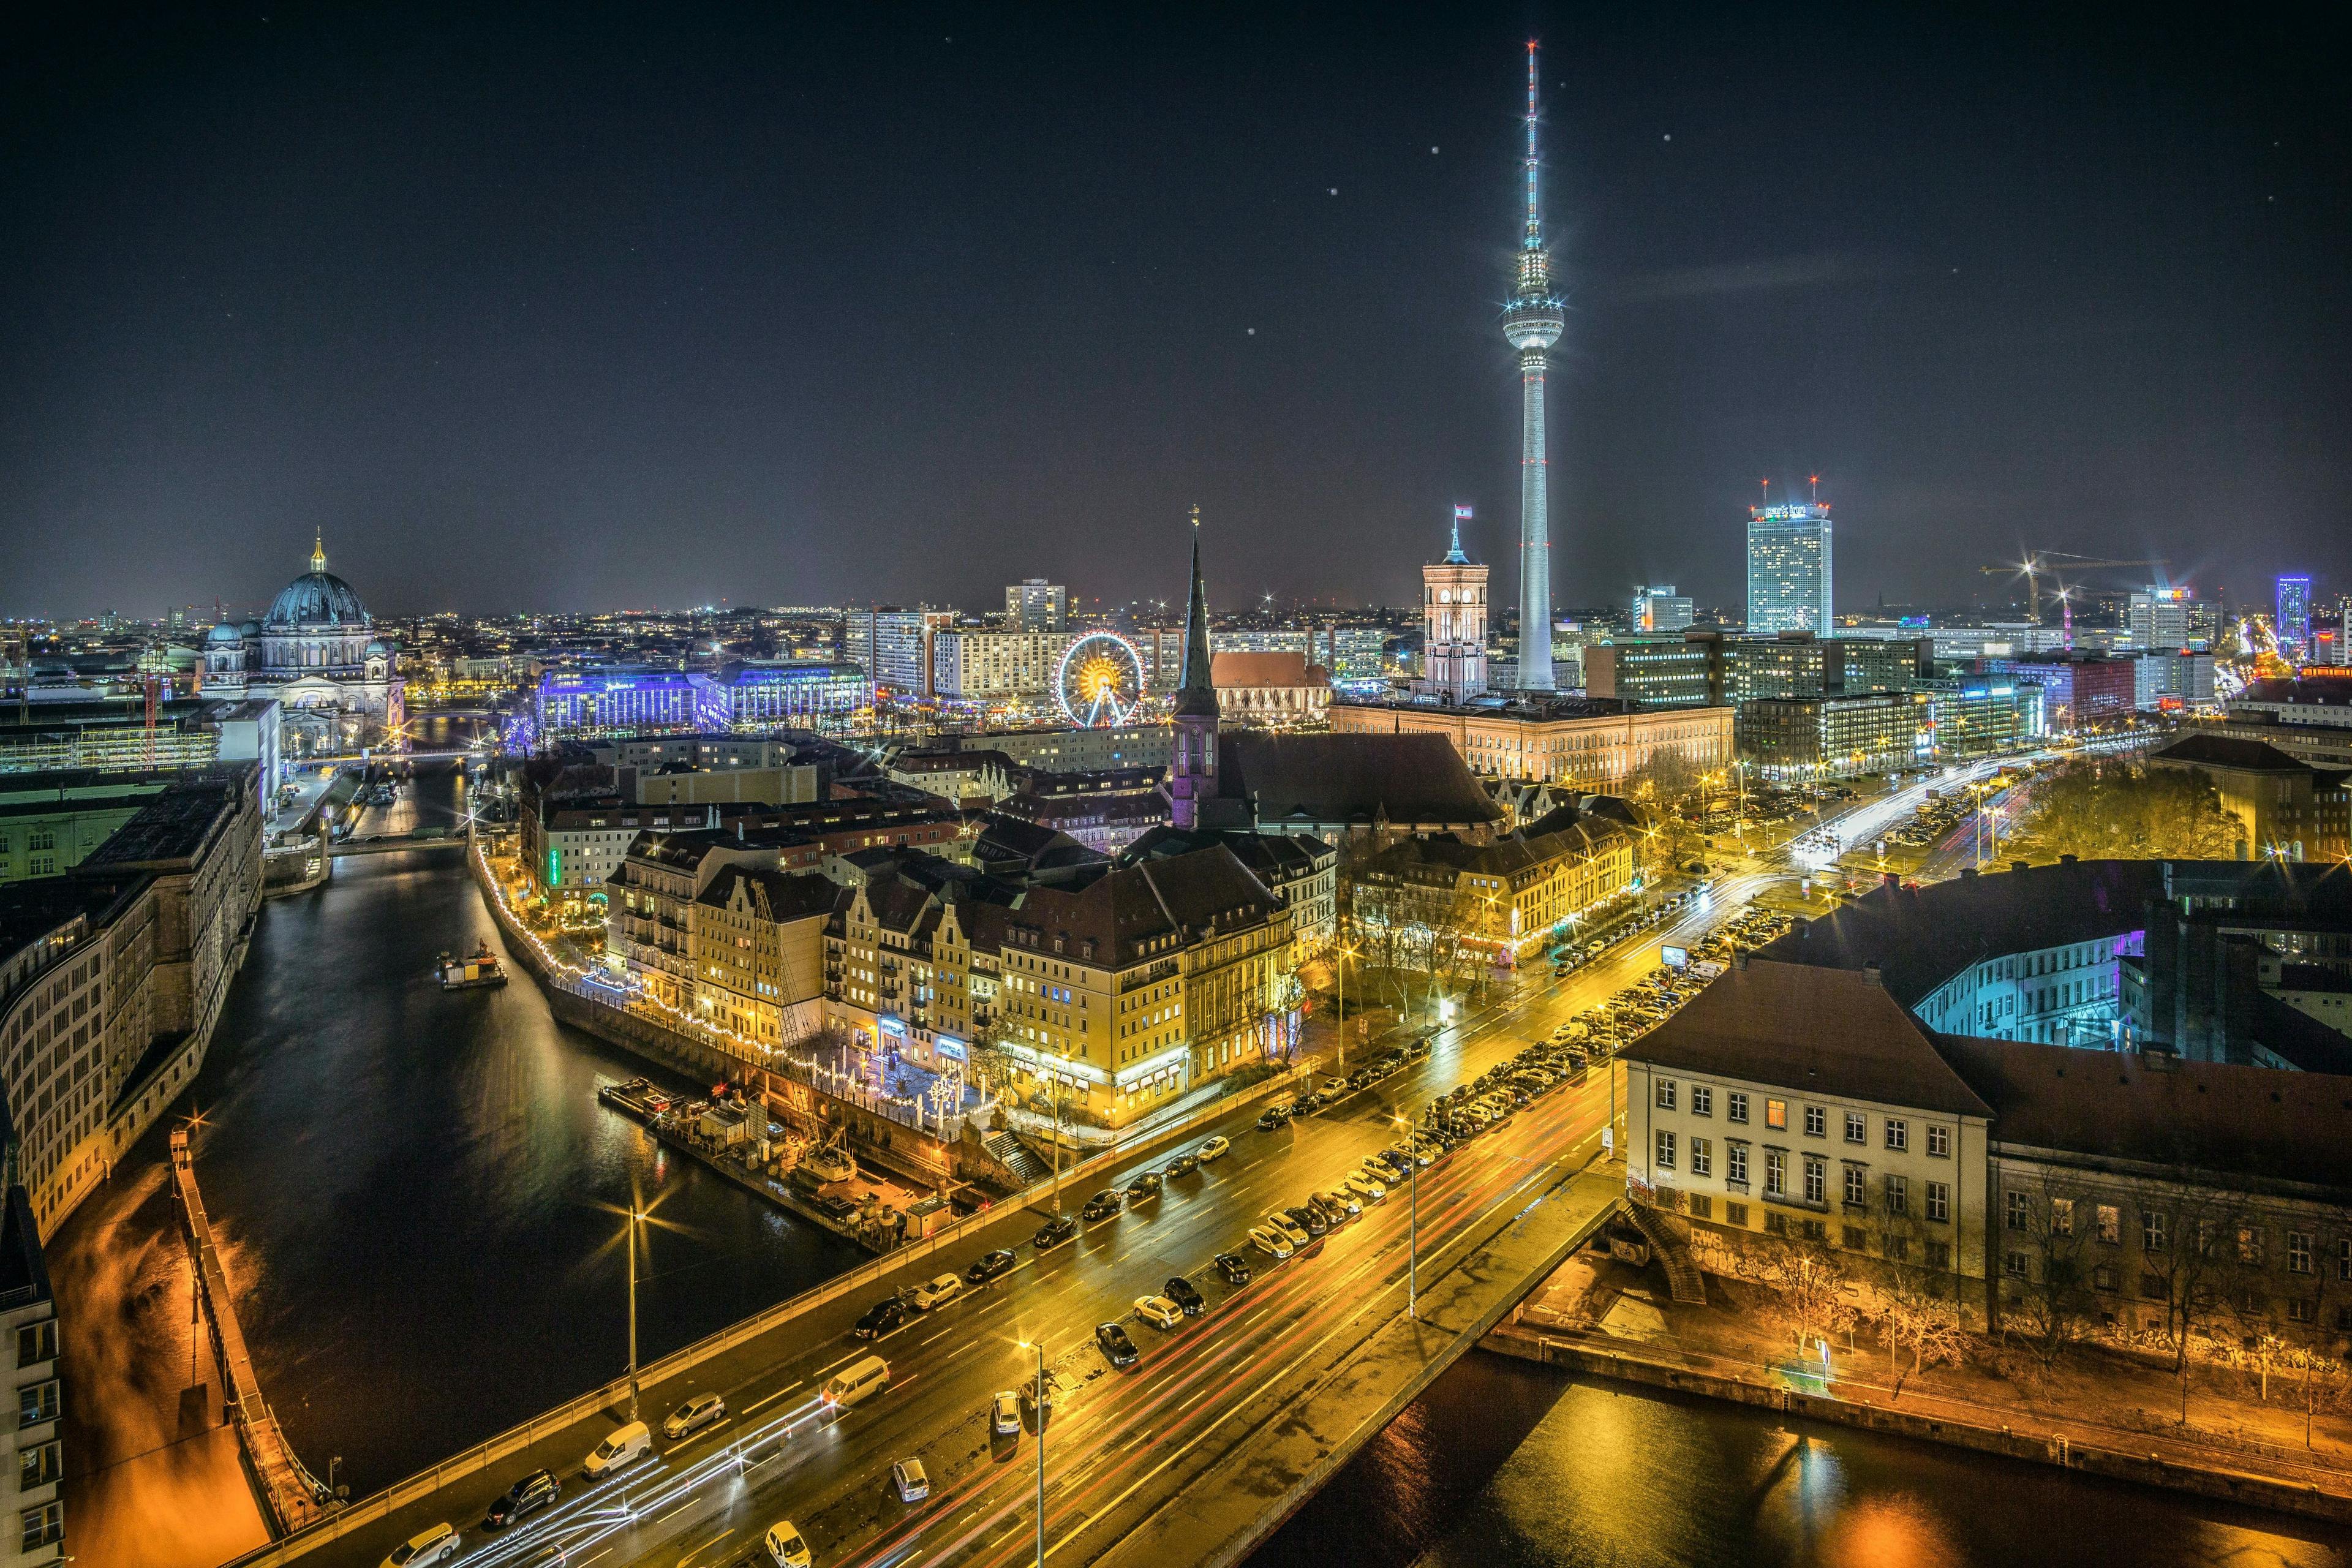 Berlin city at night